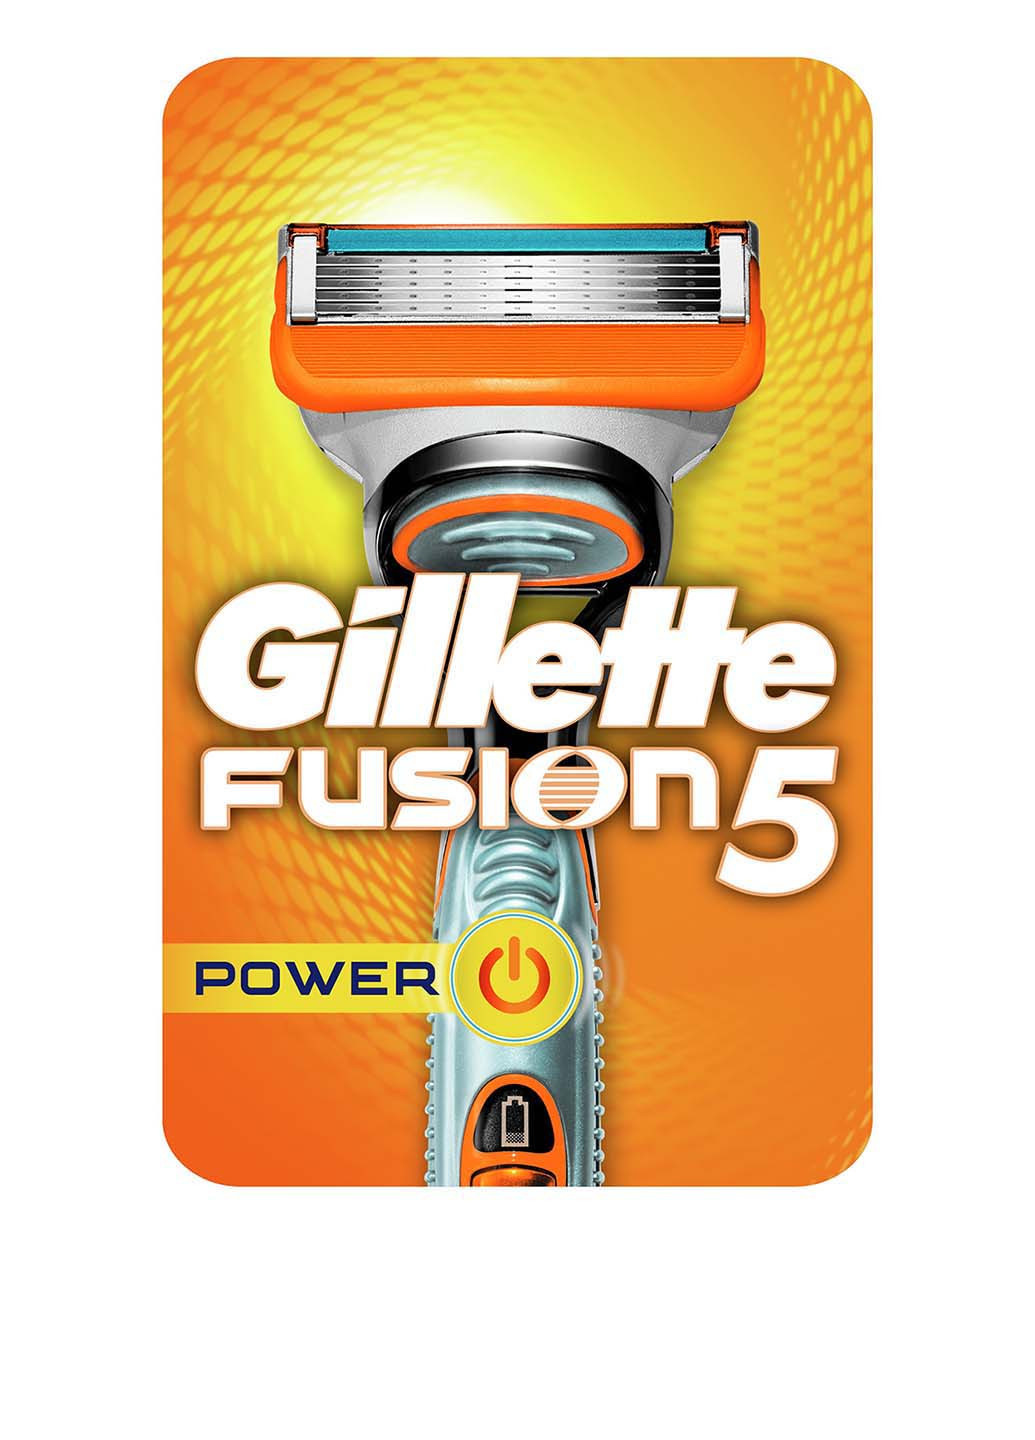 Станок с 1 сменной кассетой FUSION 5 Power Gillette (7931199)